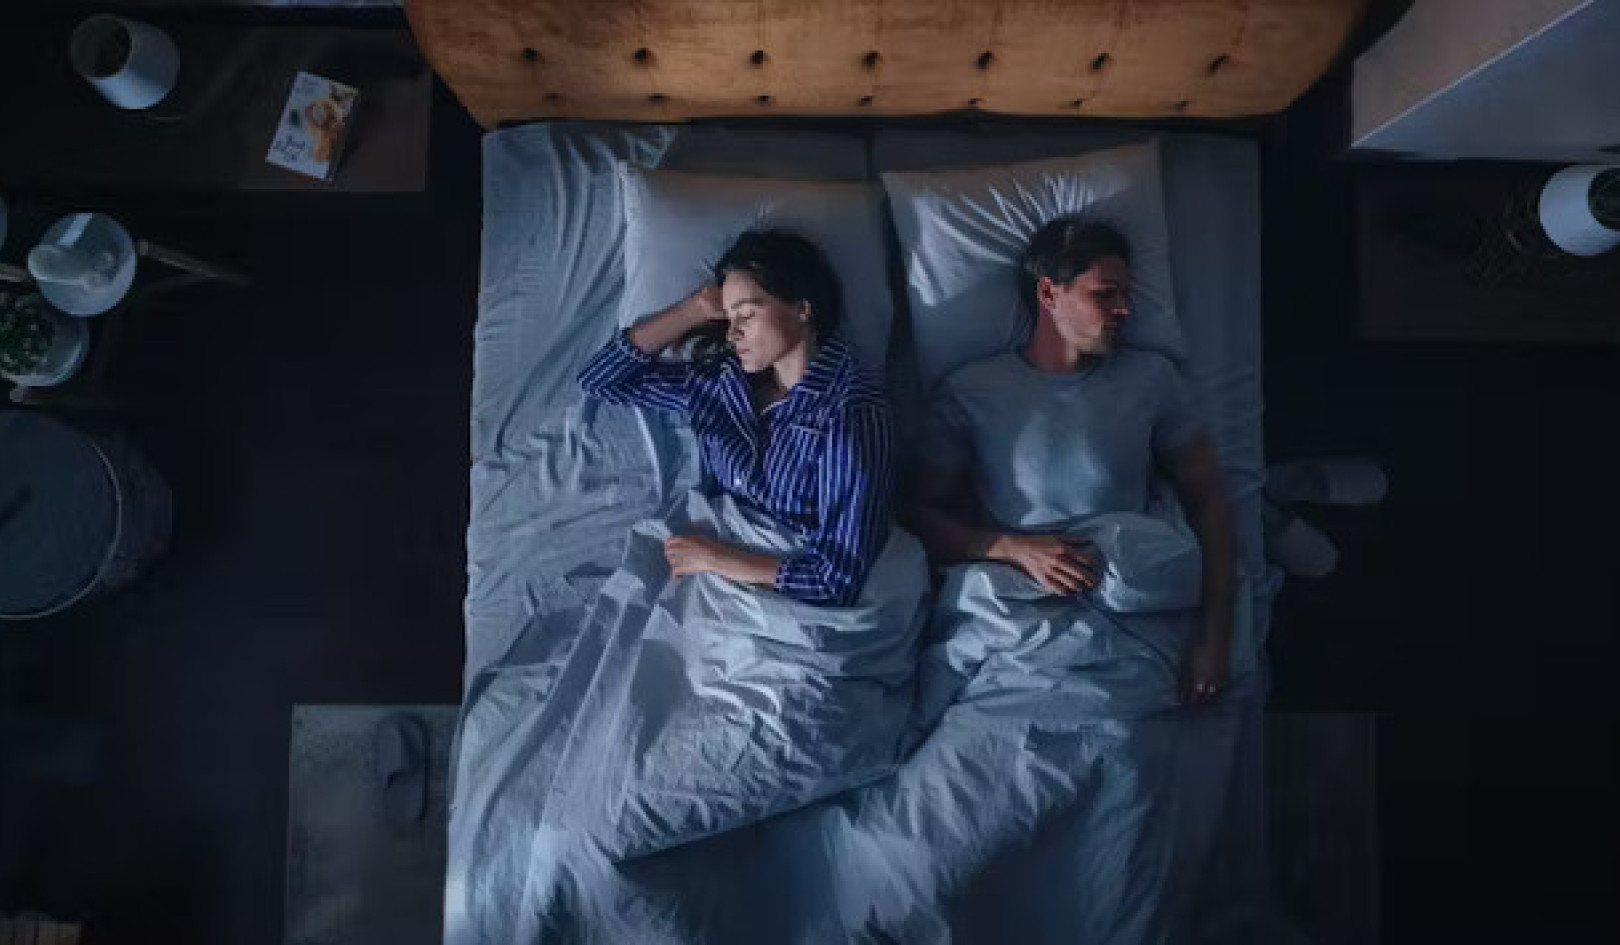 Как пол влияет на качество сна и риск заболеваний